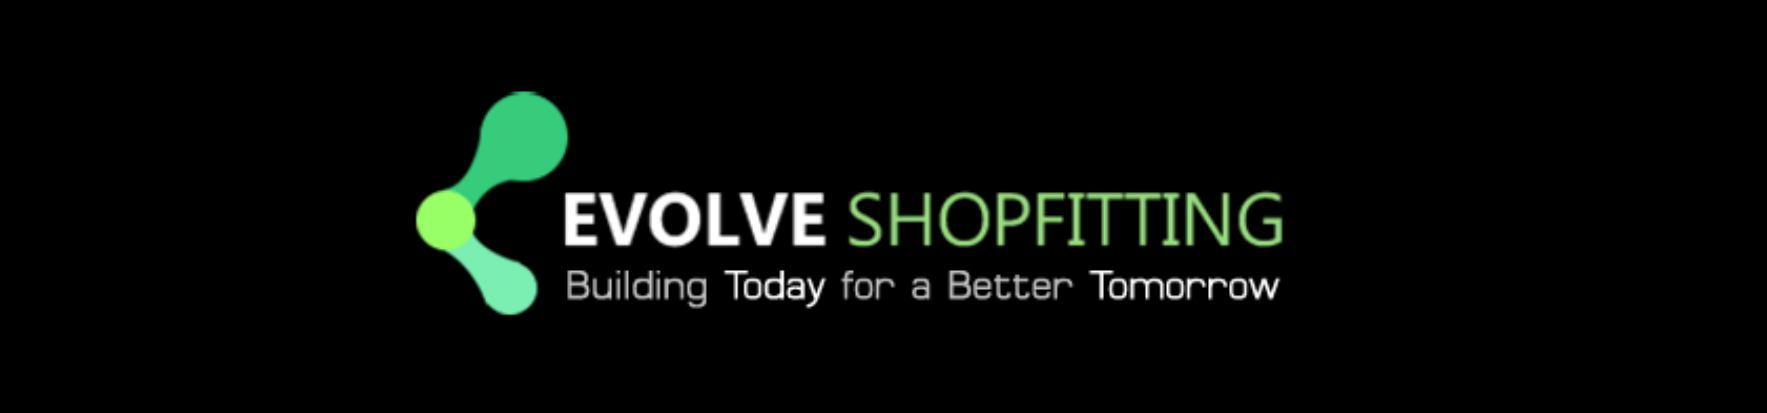 Evolve Shopfitting